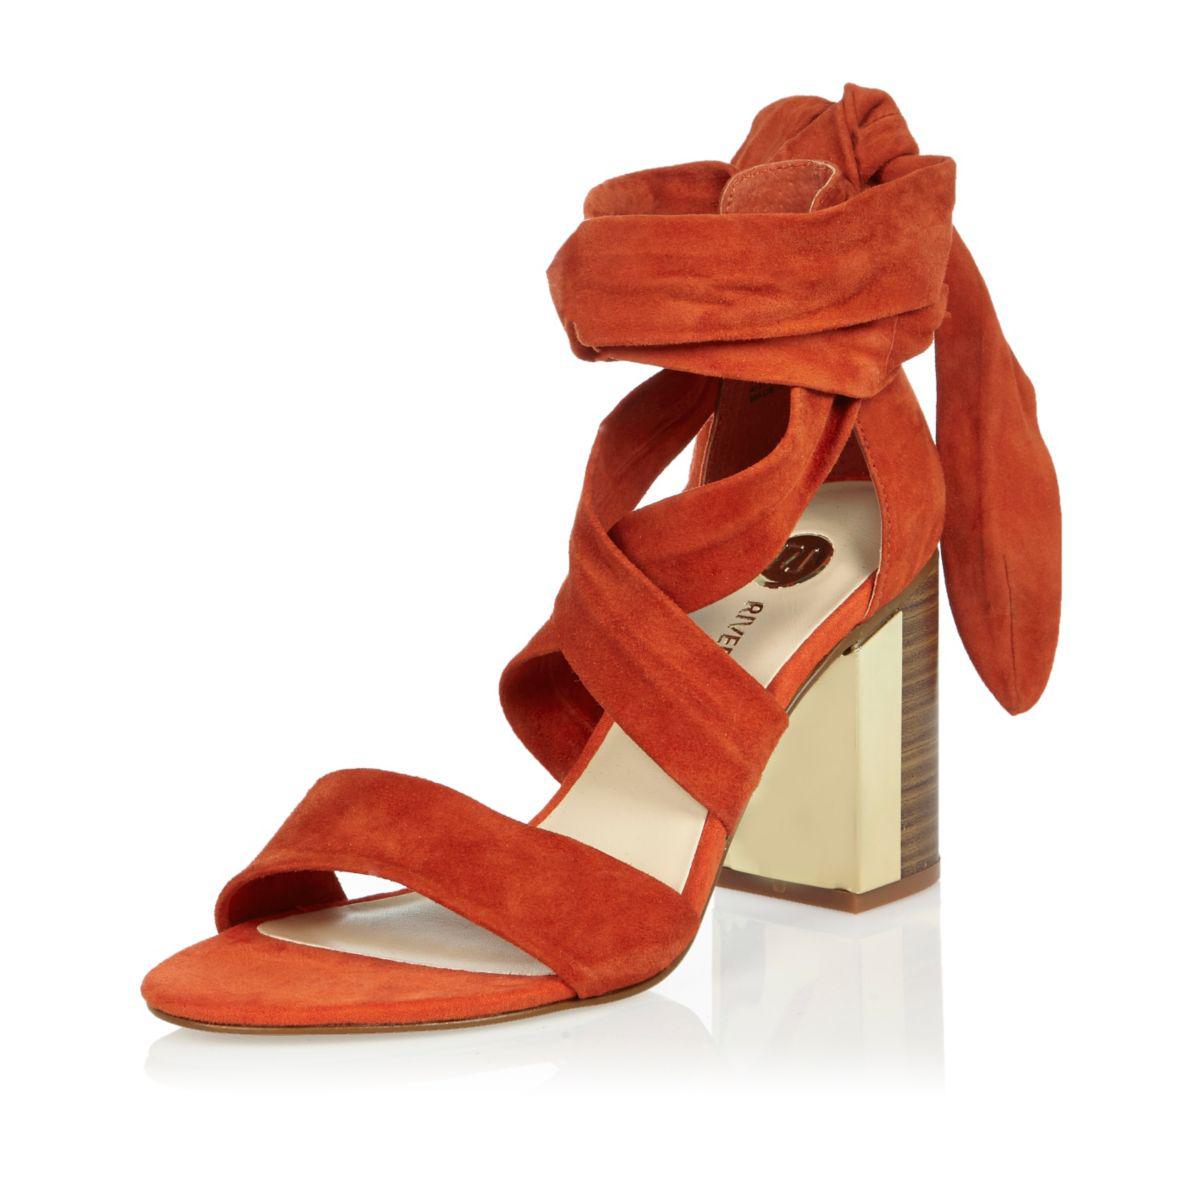 Euromart - Women's Casual Sandals - Dark Orange #399165